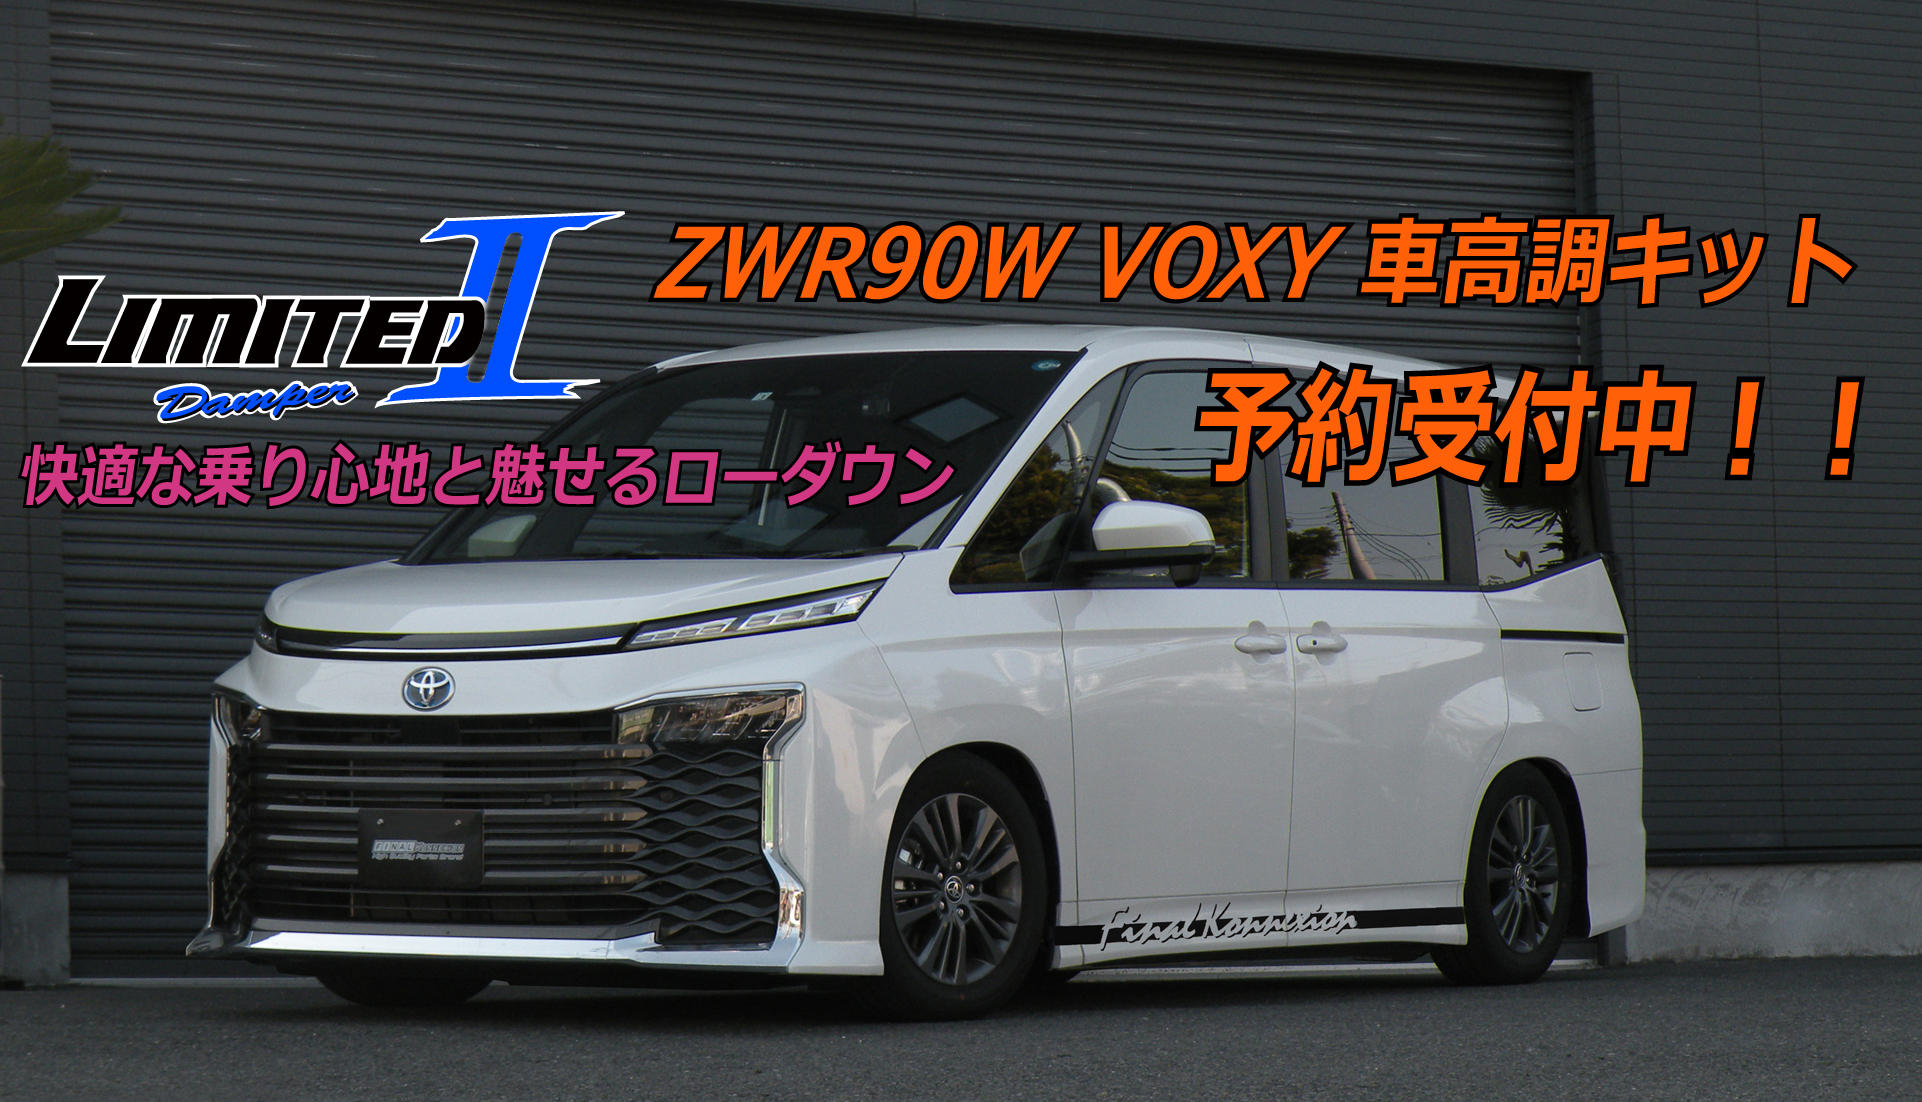 Zwr90w Voxy 車高調キット 予約受付中